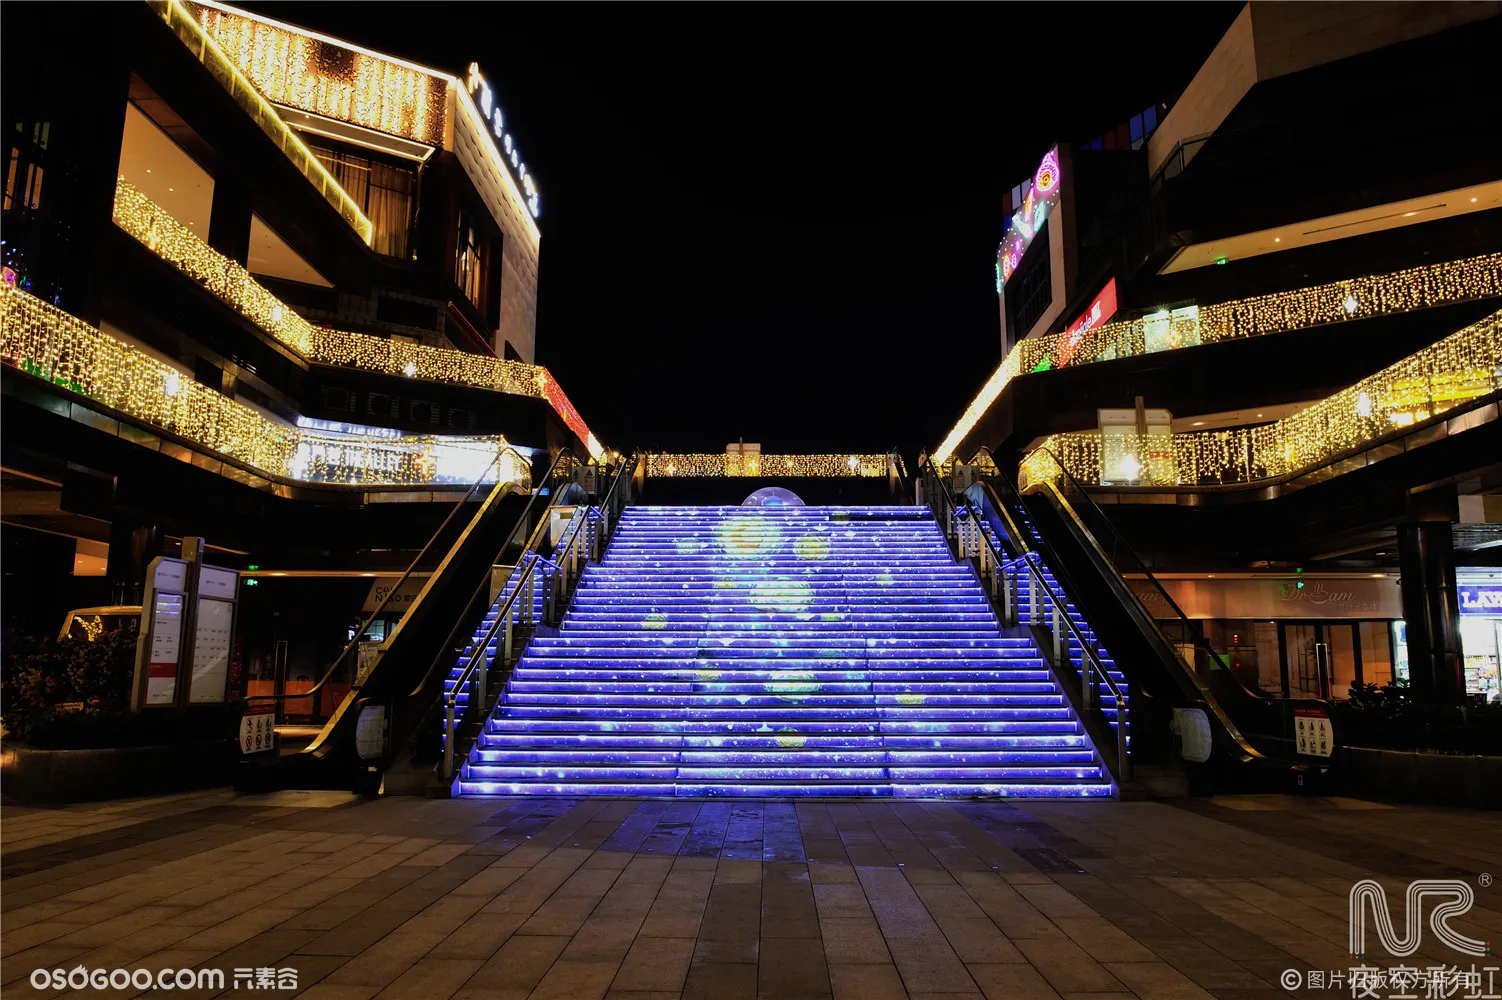 夜空彩虹案例分享——星空下的精灵-重庆华侨城